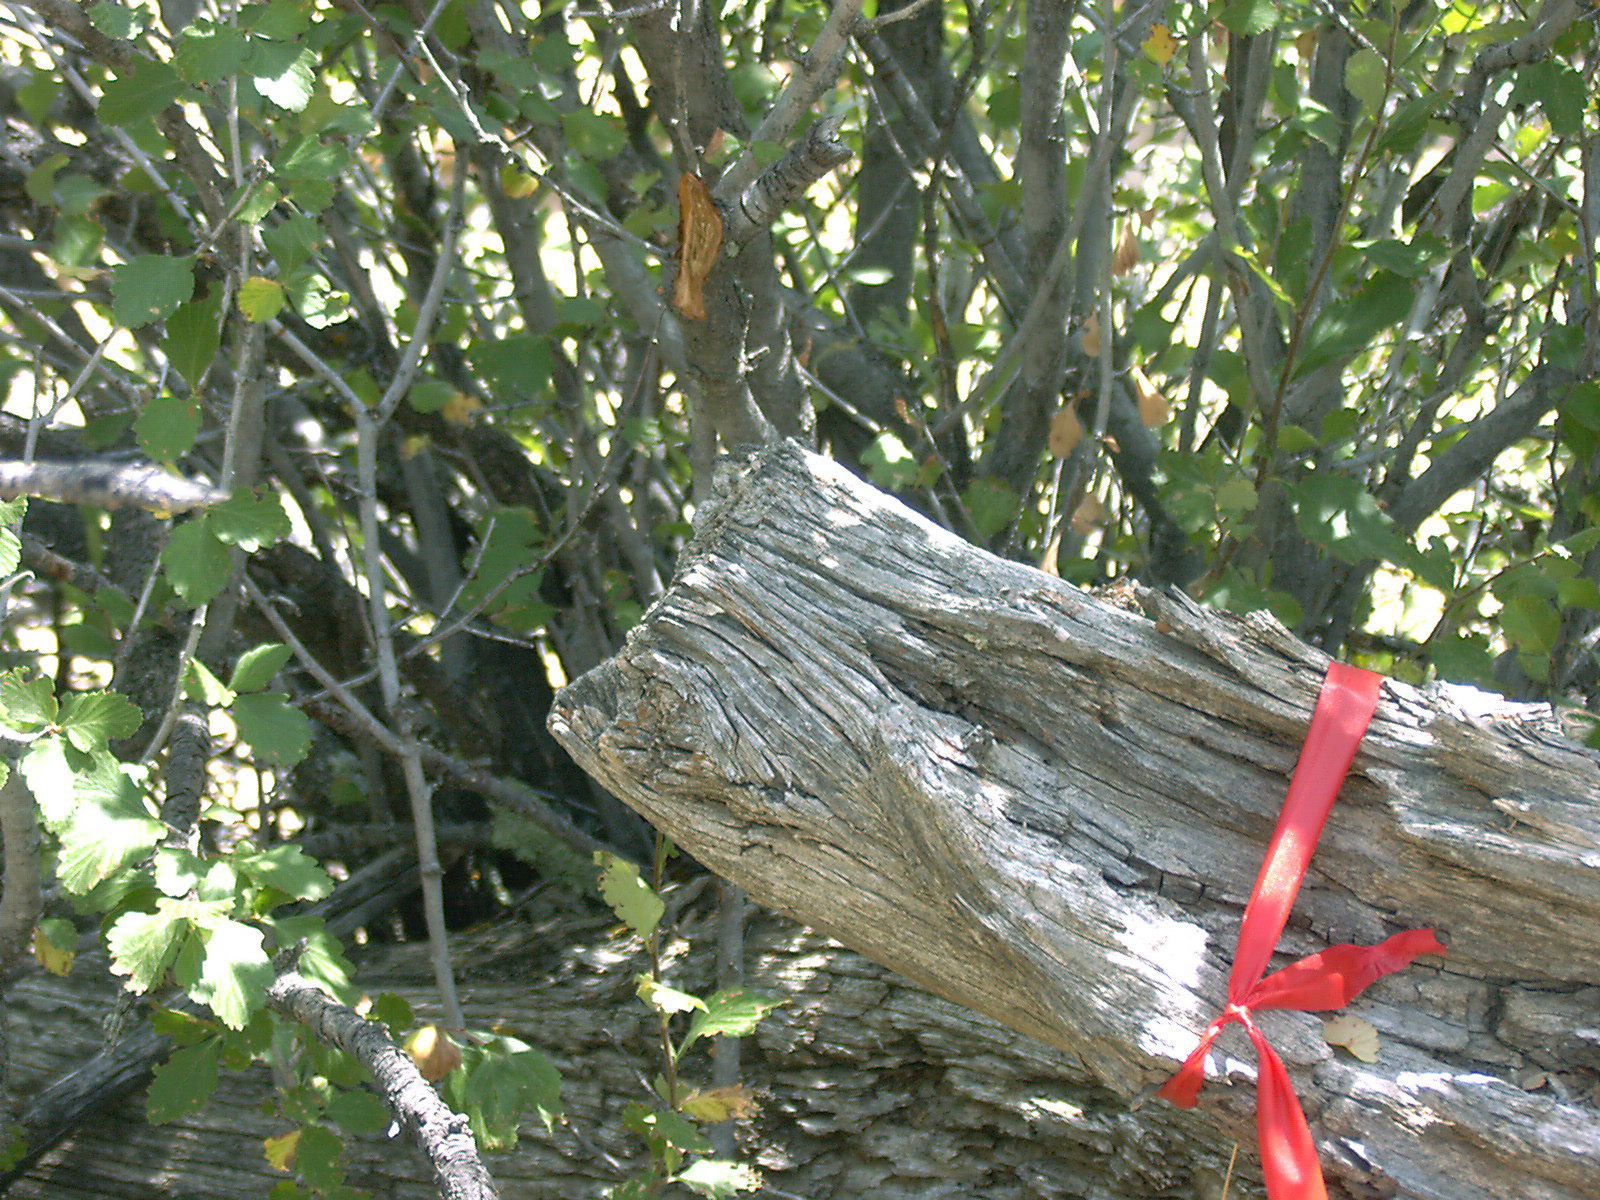 A CMT/ax-cut limb on La Ventana Mesa.